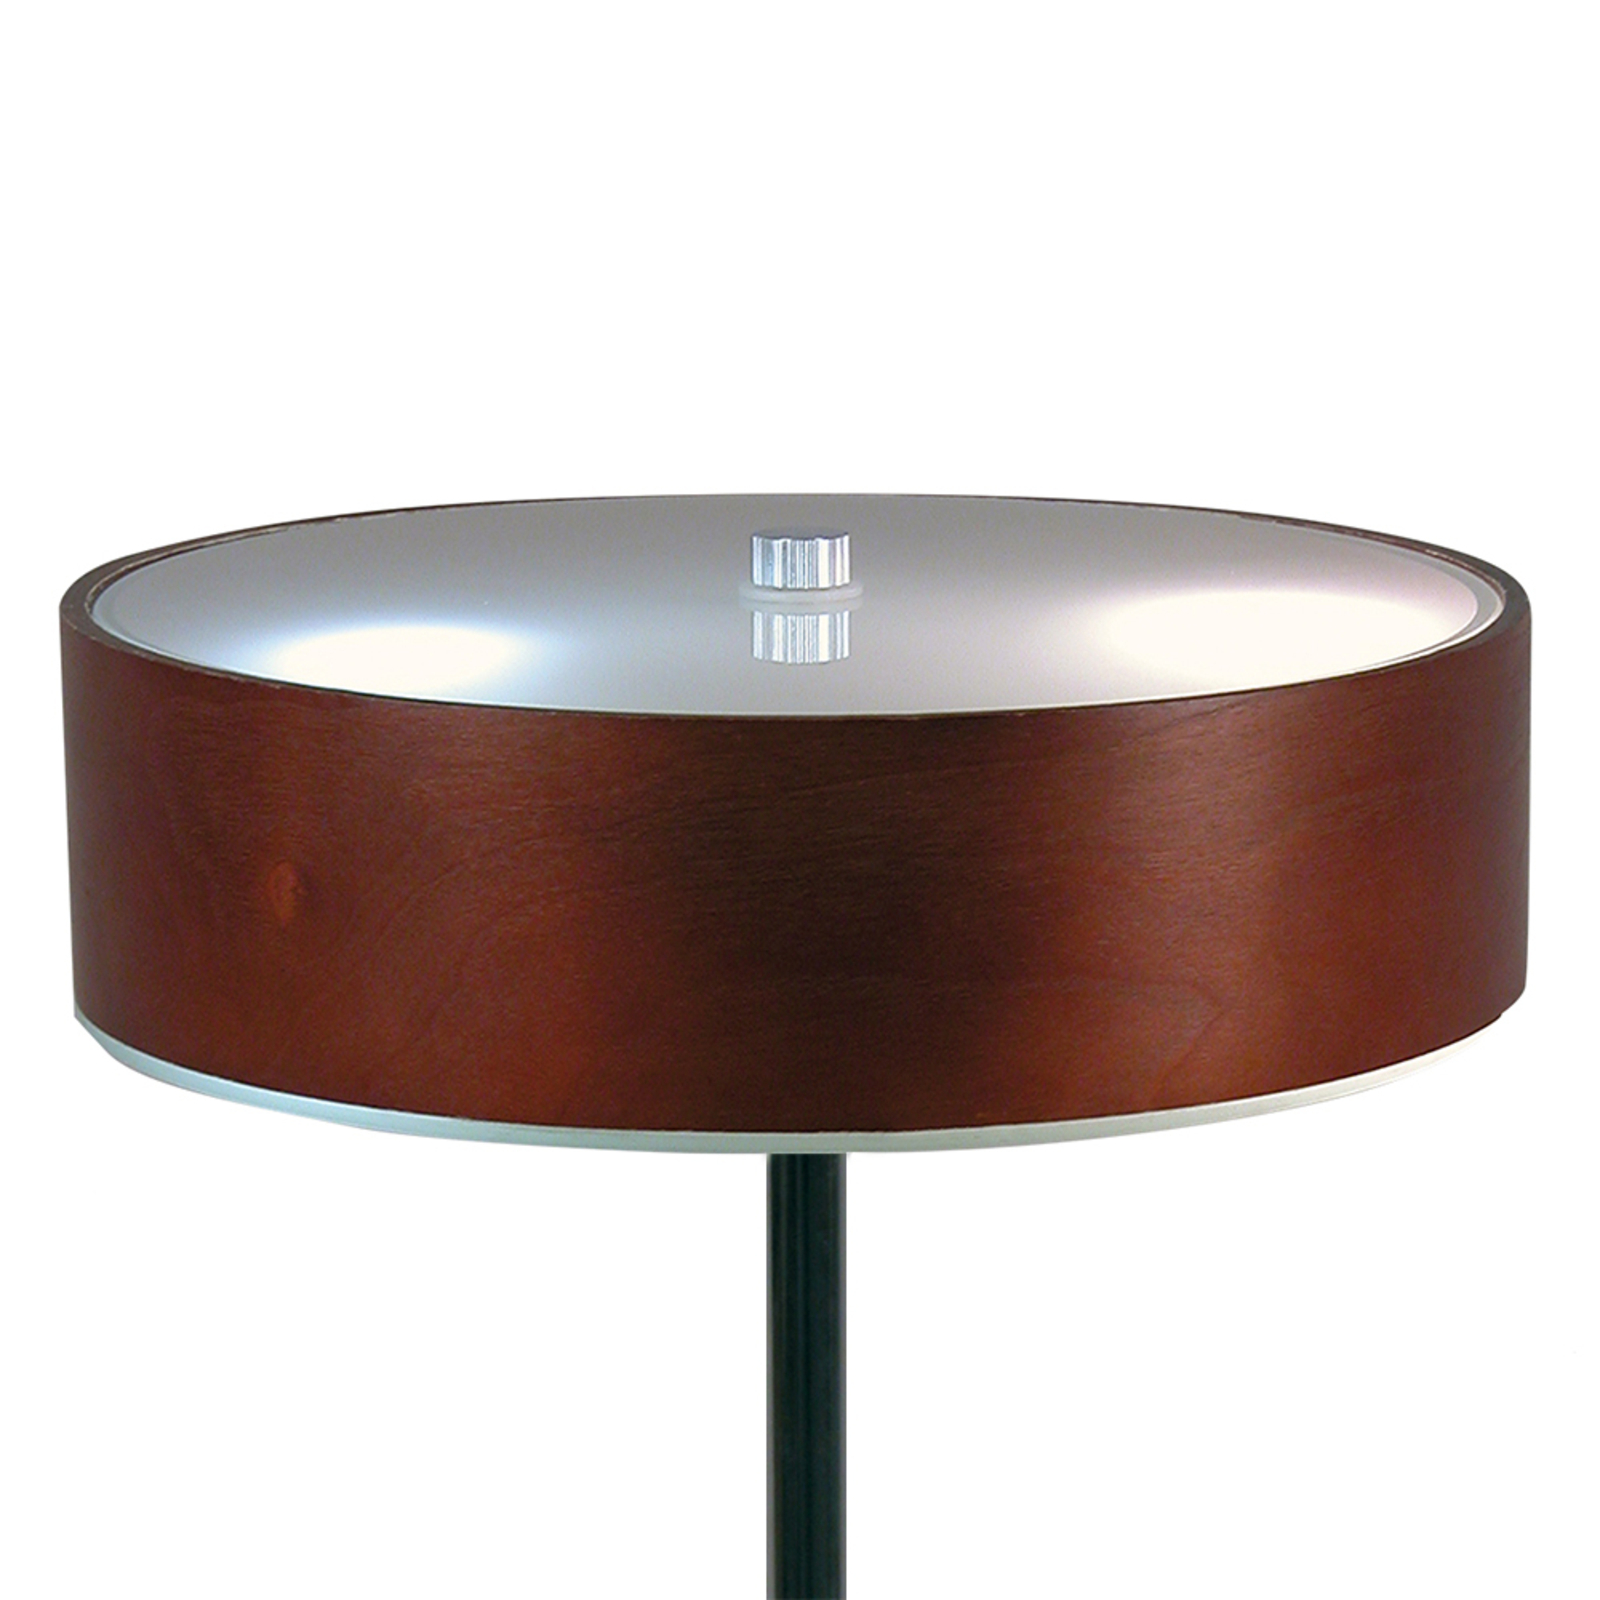 Előkelő asztali lámpa Malibu ébenfa díszítéssel